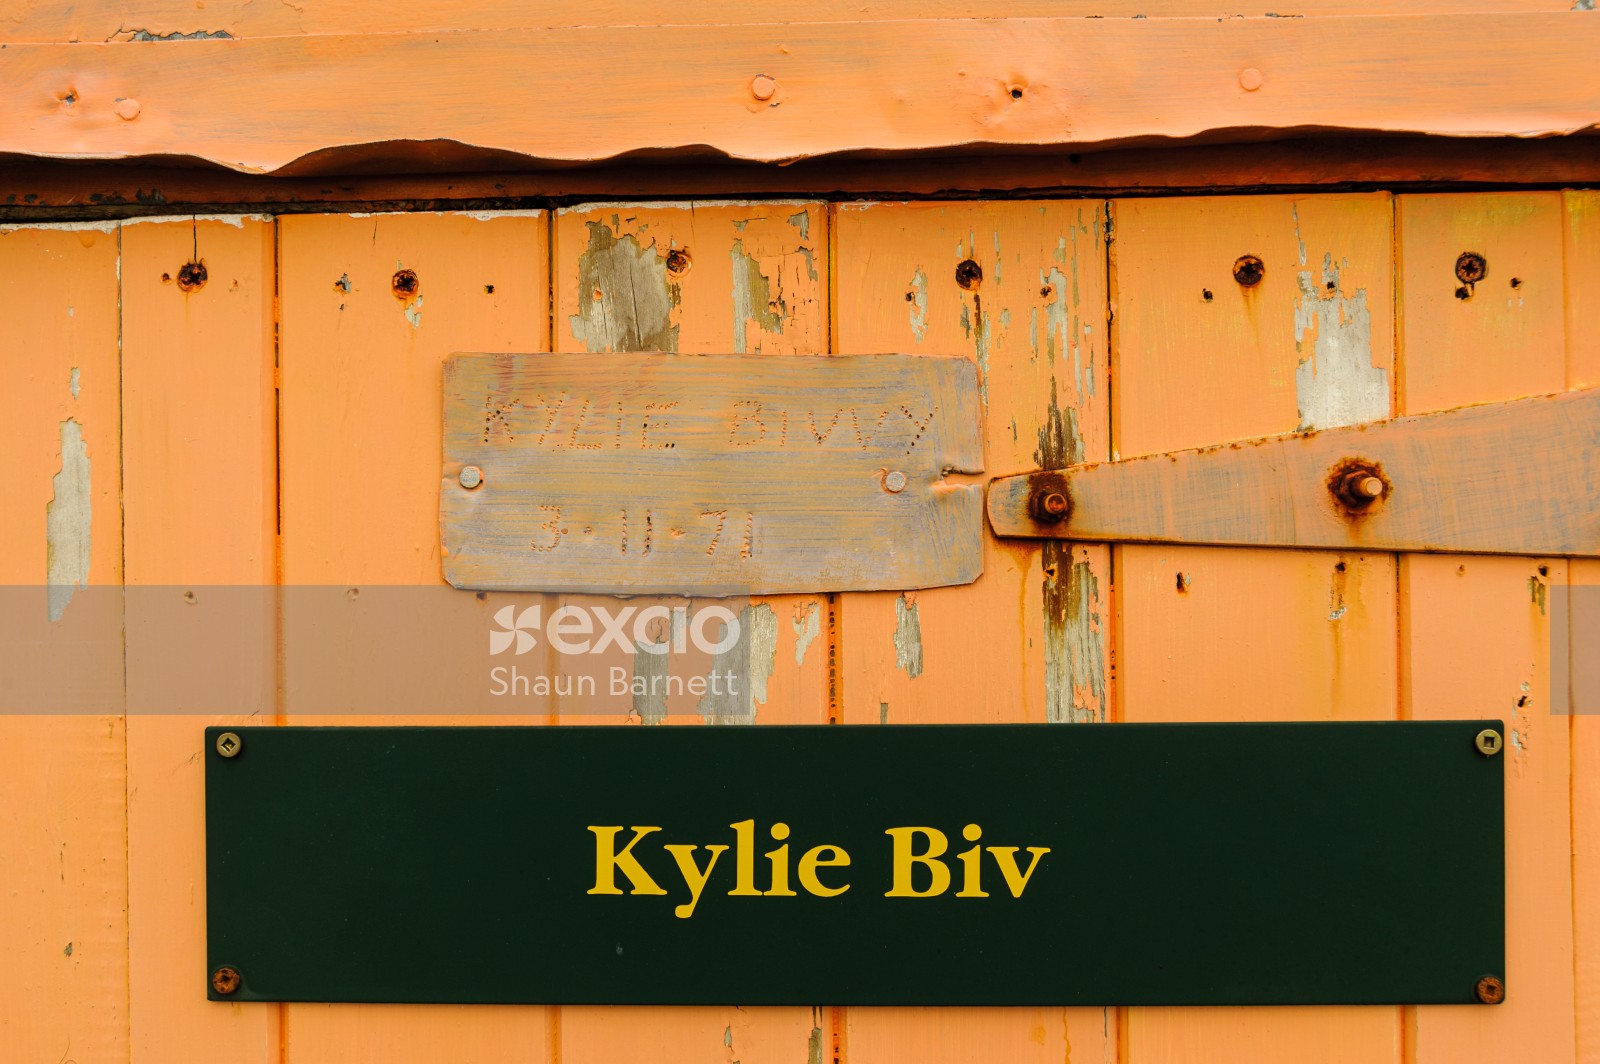 Kylie Biv detail, Ruahine Range